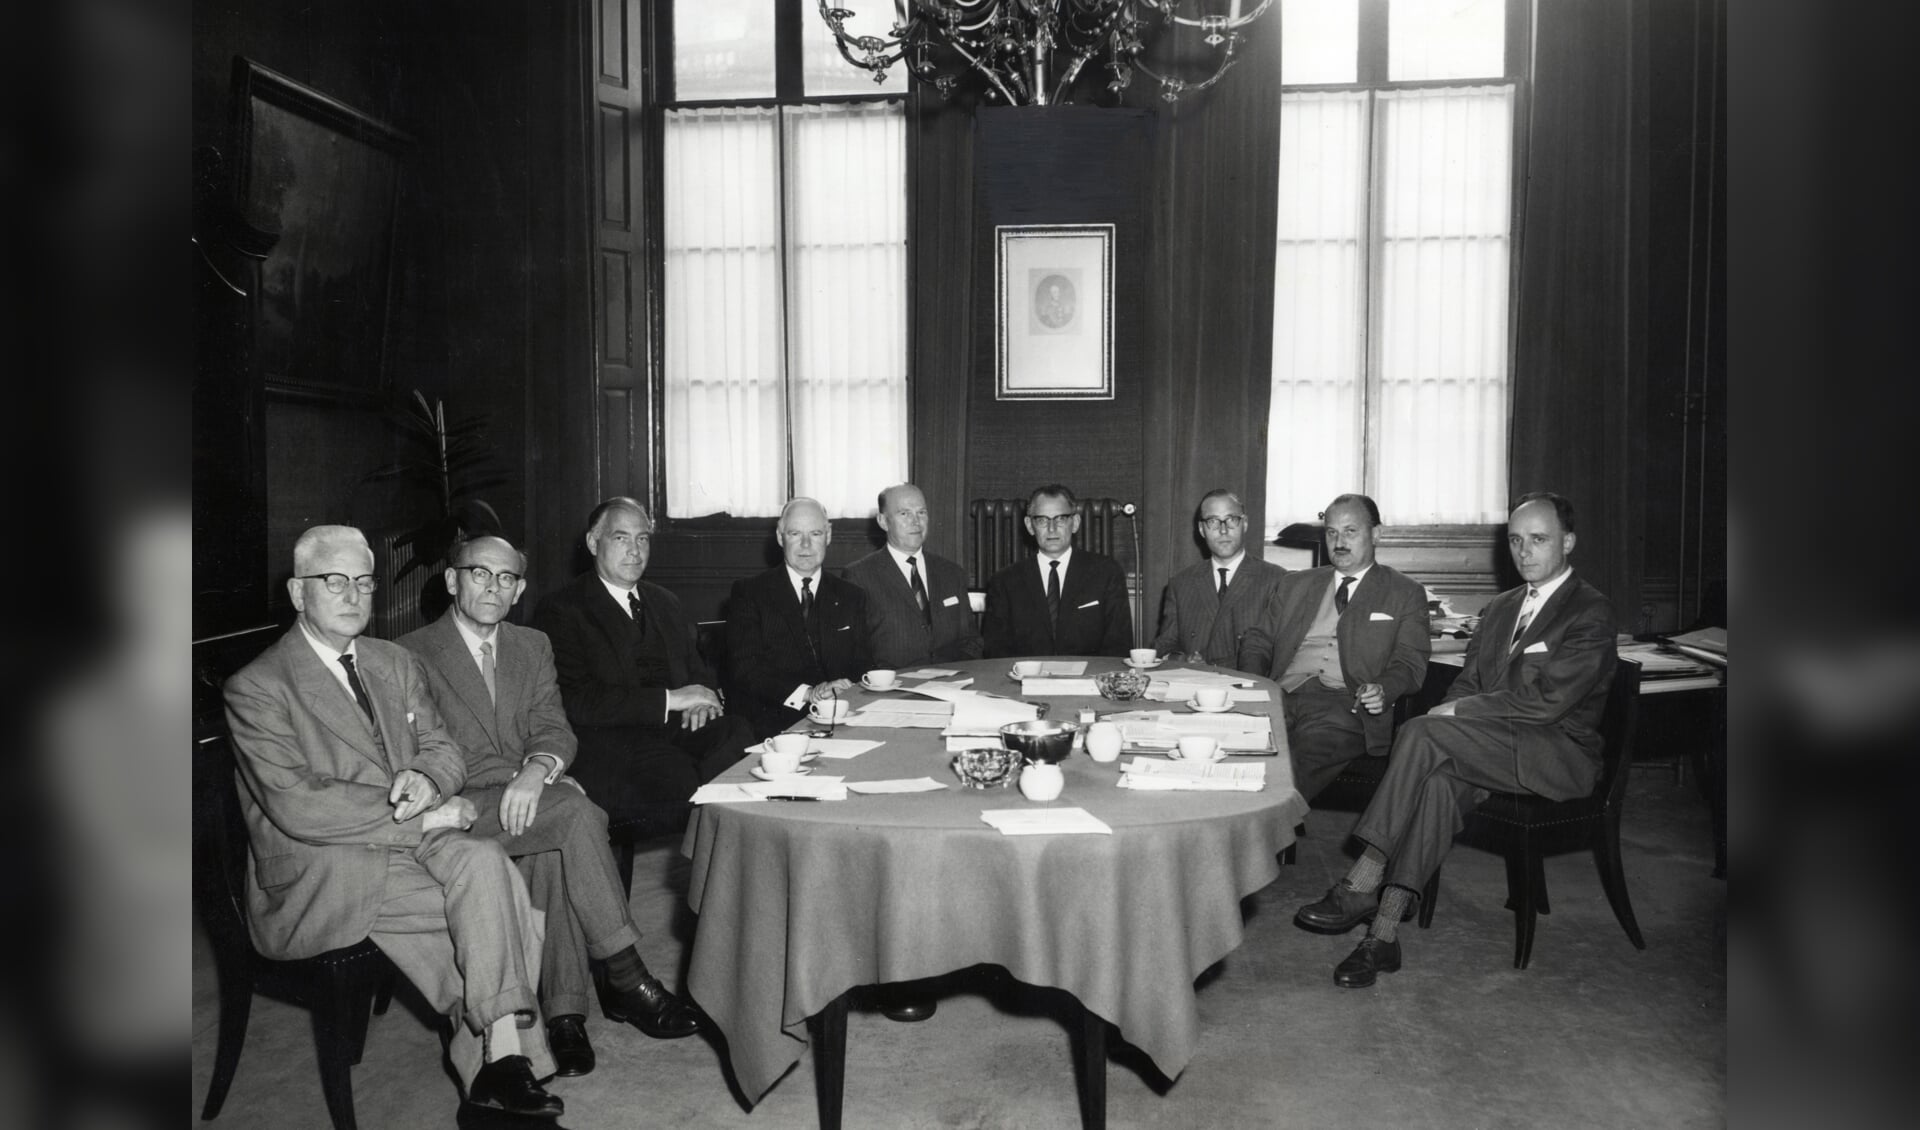 Uit 1960, ‘Groepsportret van de commissie van overleg inzake het Universiteitscentrum te Utrecht. Ten voeten uit, zittend om een tafel. V.l.n.r.: W.H. Brune, P.H. Damsté, (burgemeester) K. Fabius, A.P. Korthals Altes, J.L. Wessels Boer, A.P. Timmer, T. Renes, W.H.J. Derks en P. van Zanten’. Het gaat hier over de voorgesprekken die uiteindelijk tot realisering van de ‘Uithof’ leidden. (foto Utrechts Archief.)